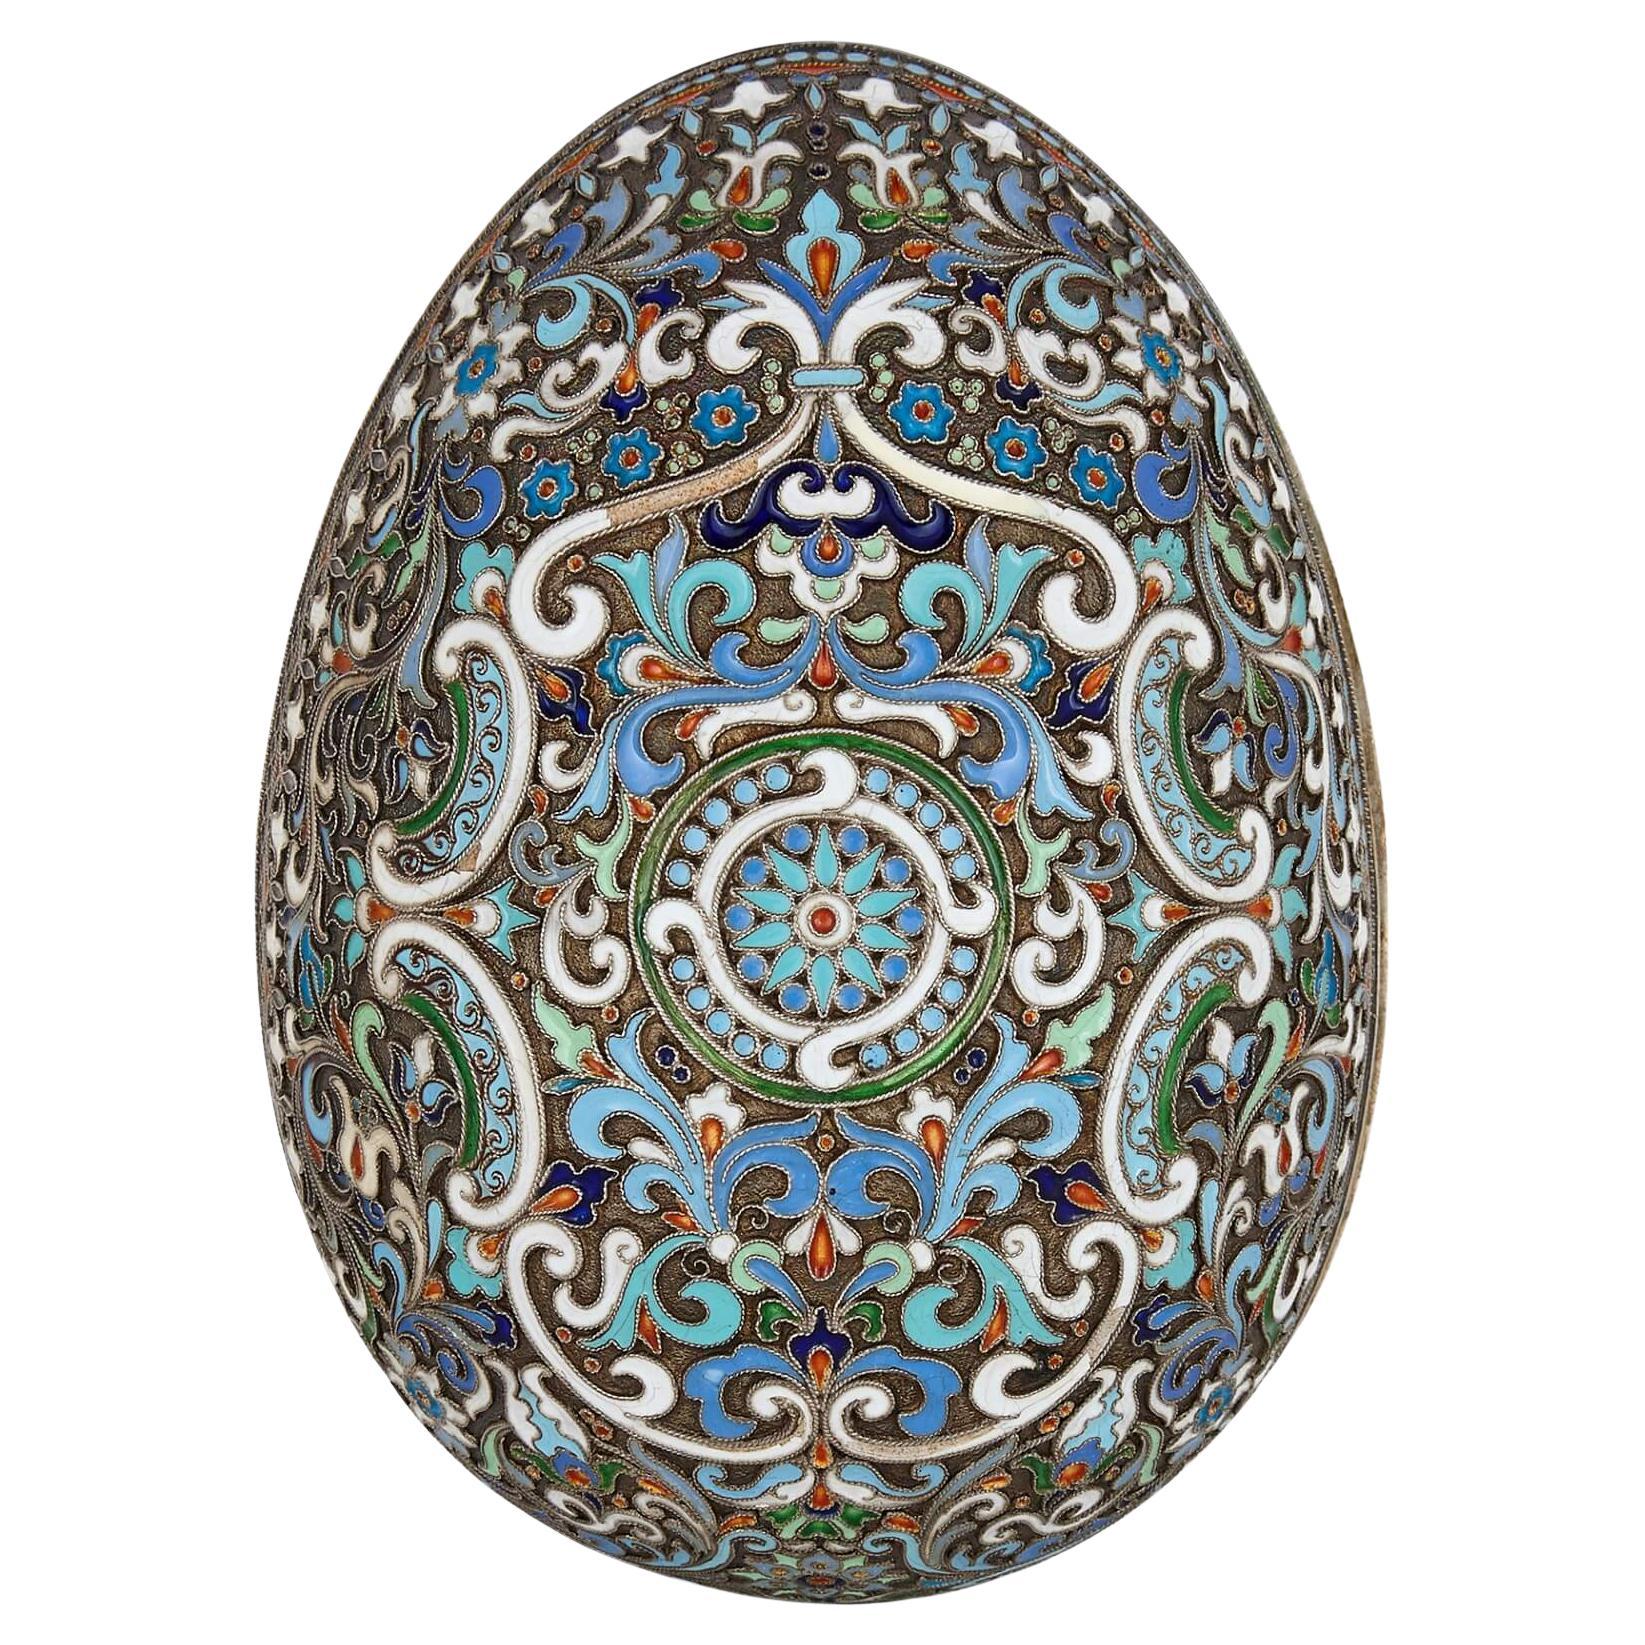 Russian Fabergé style cloisonné enamel Easter egg